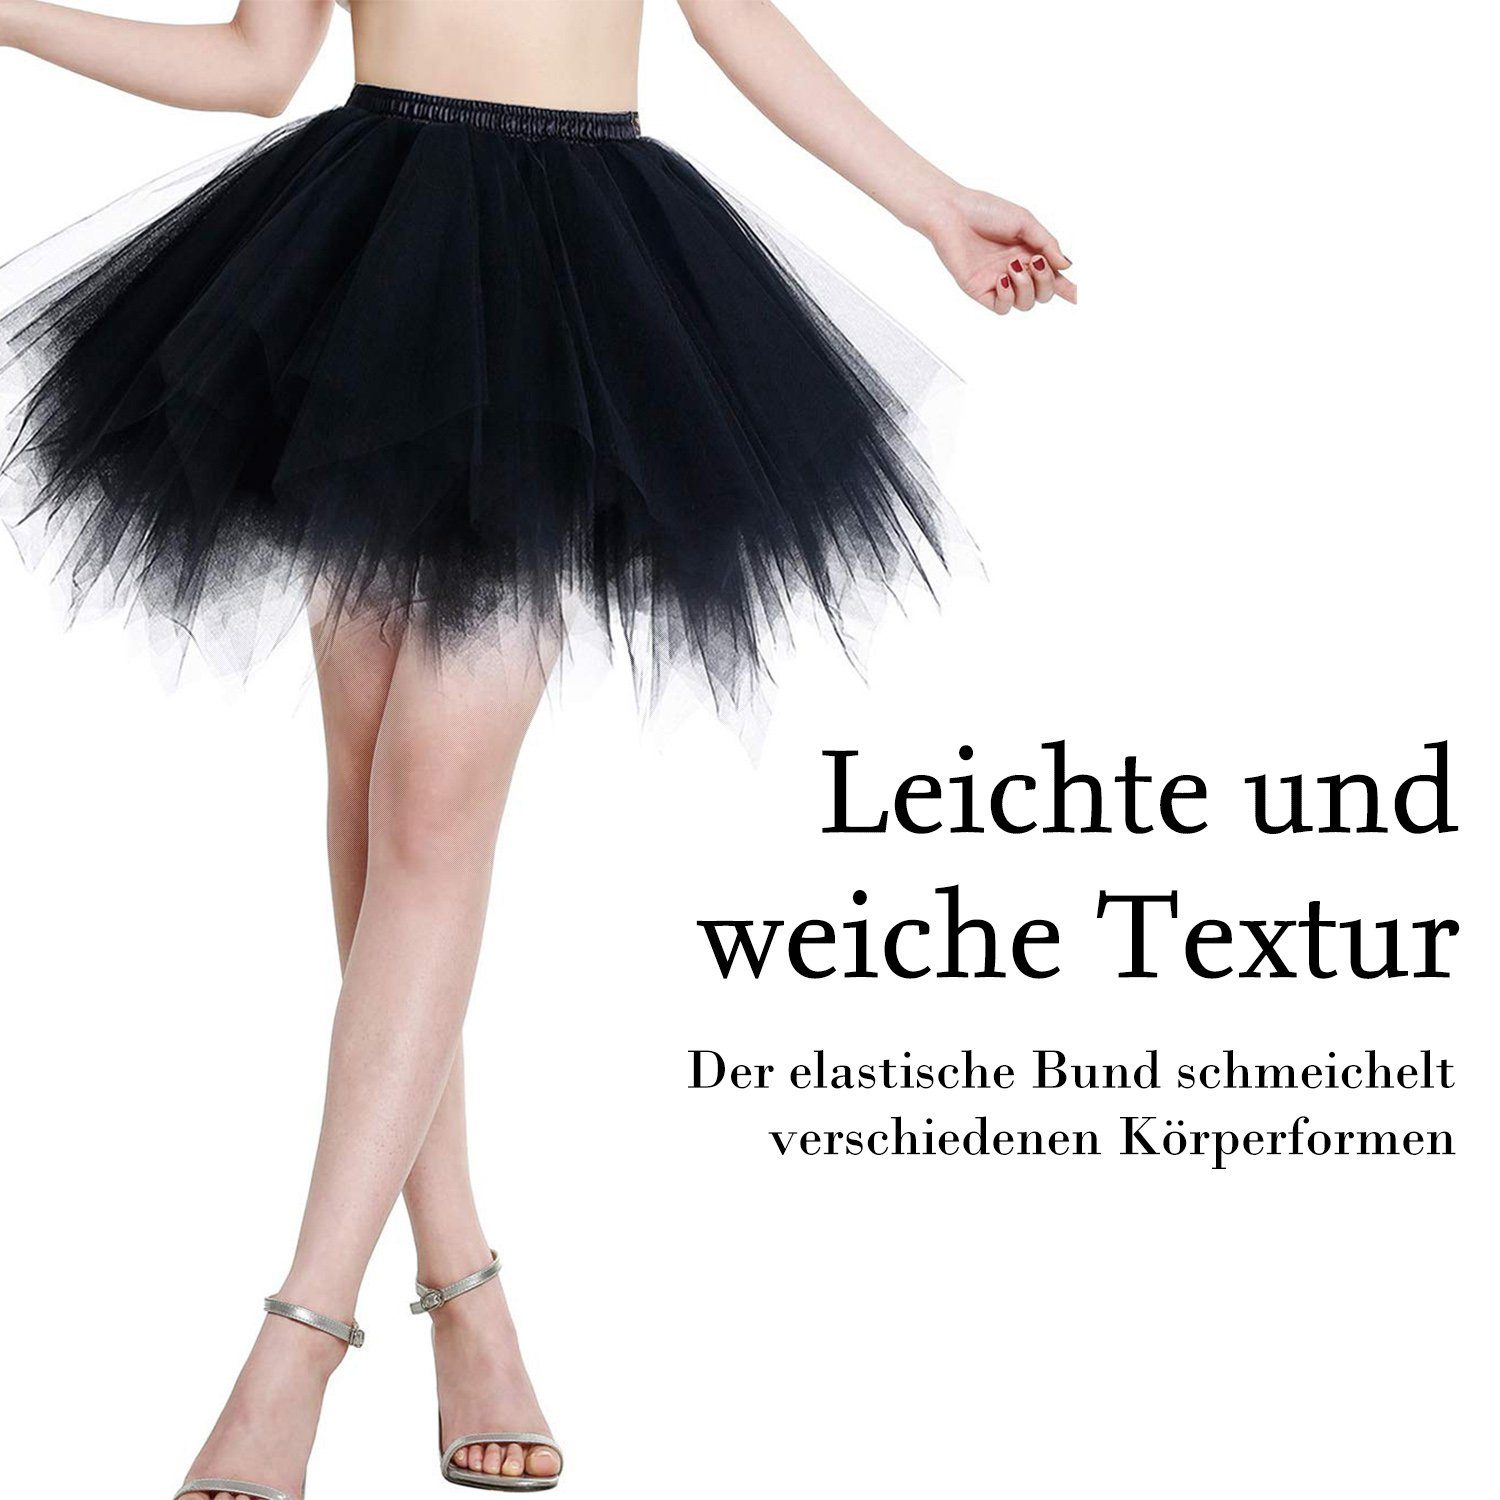 Daisred Tüllrock Schwarz Petticoat Karnevalskostüme Damen Tüllrock tütü 50er